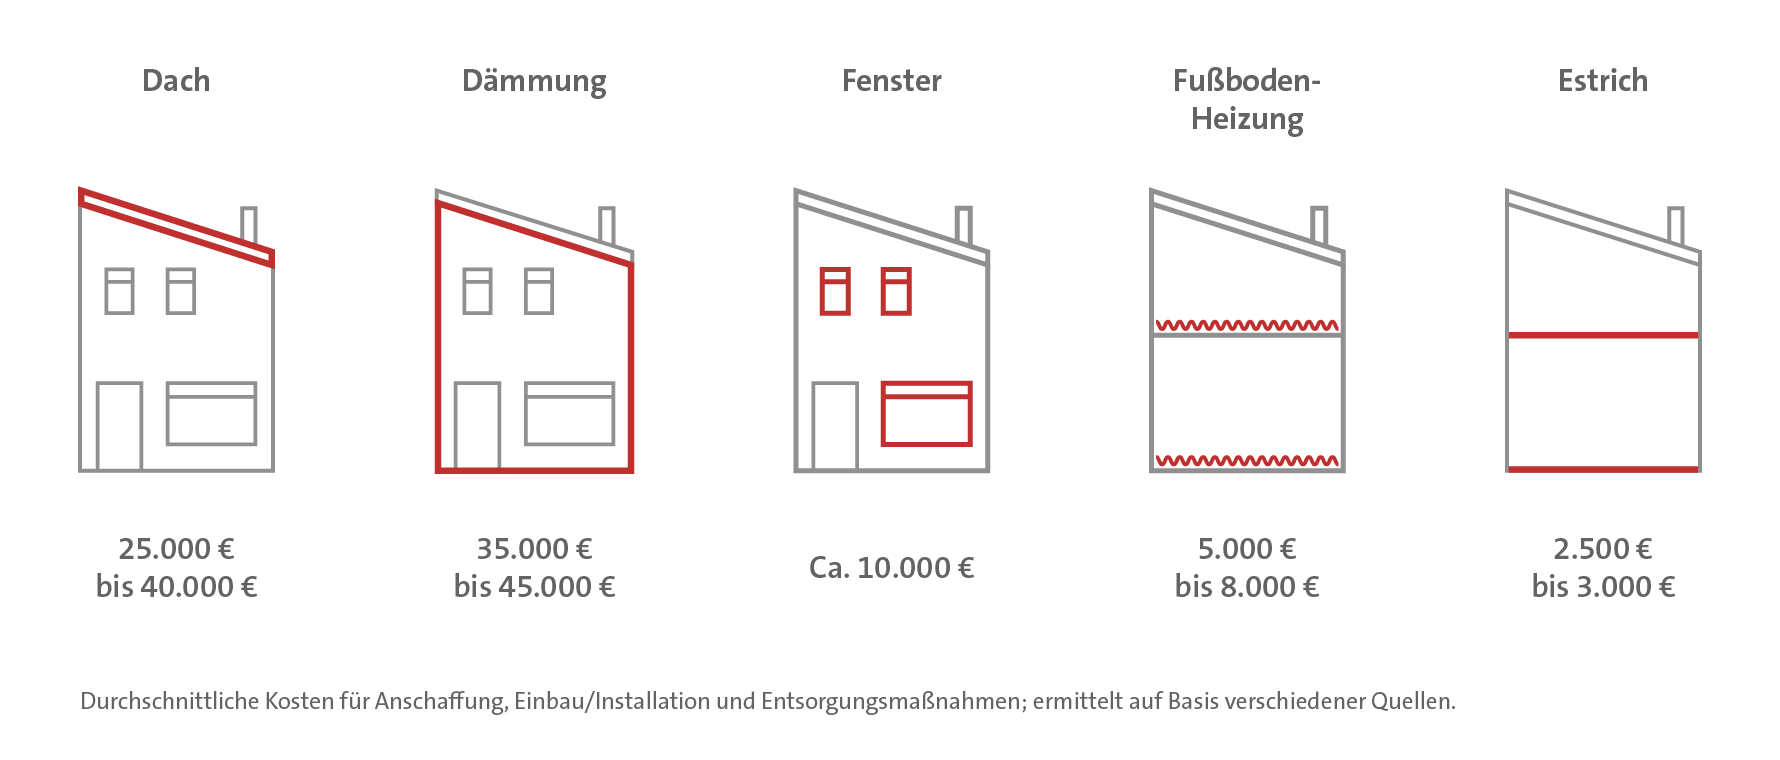 Durchschnittliche Kosten für die energetische Sanierung eines Dachs und der Dämmung sowie dem Austausch der Fenster eines Gebäudes, dem Einbau von Fußbodenheizungen und der Verlegung von Estrich.